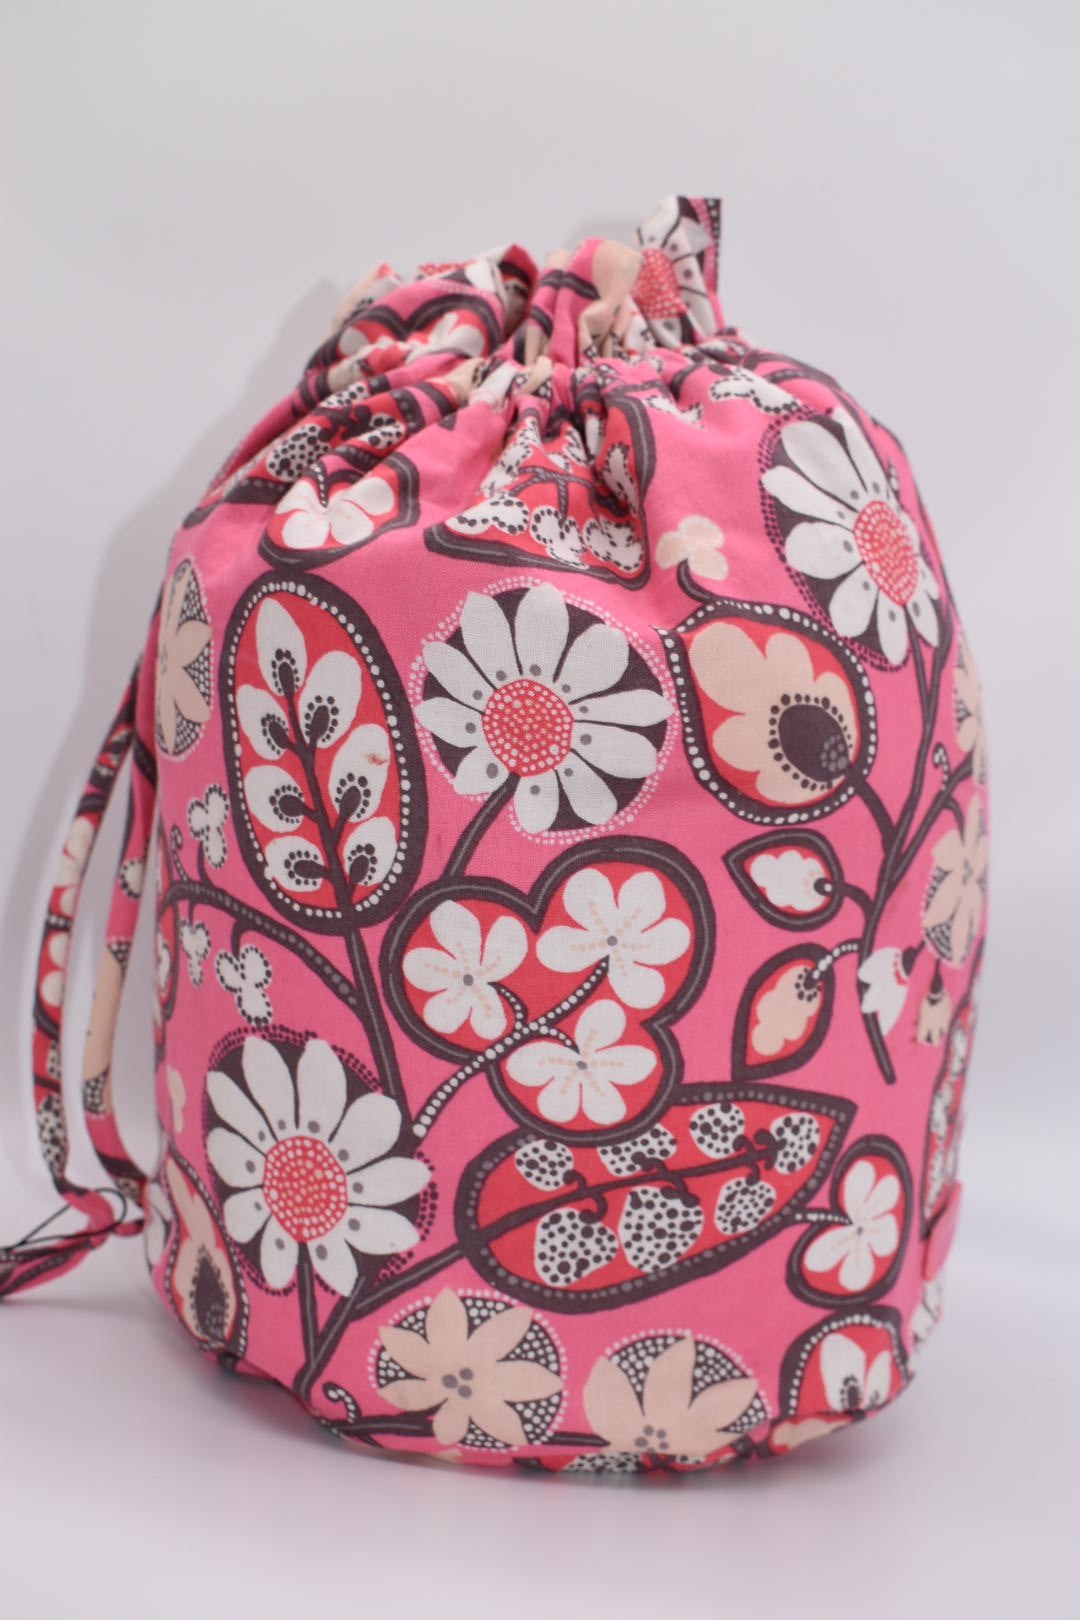 Vera Bradley Ditty Bag in "Blush Pink" Pattern